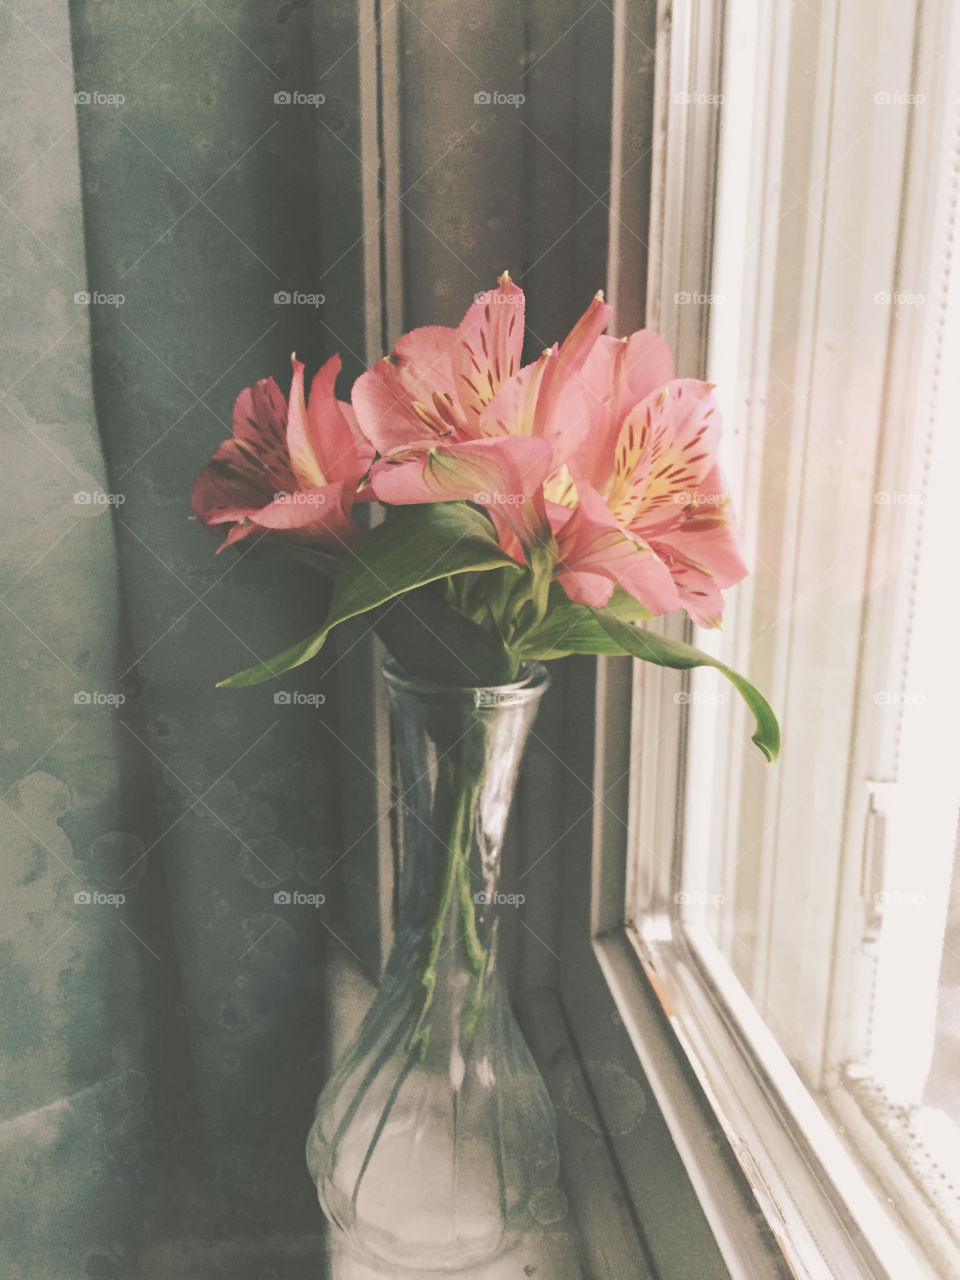 Window flowers